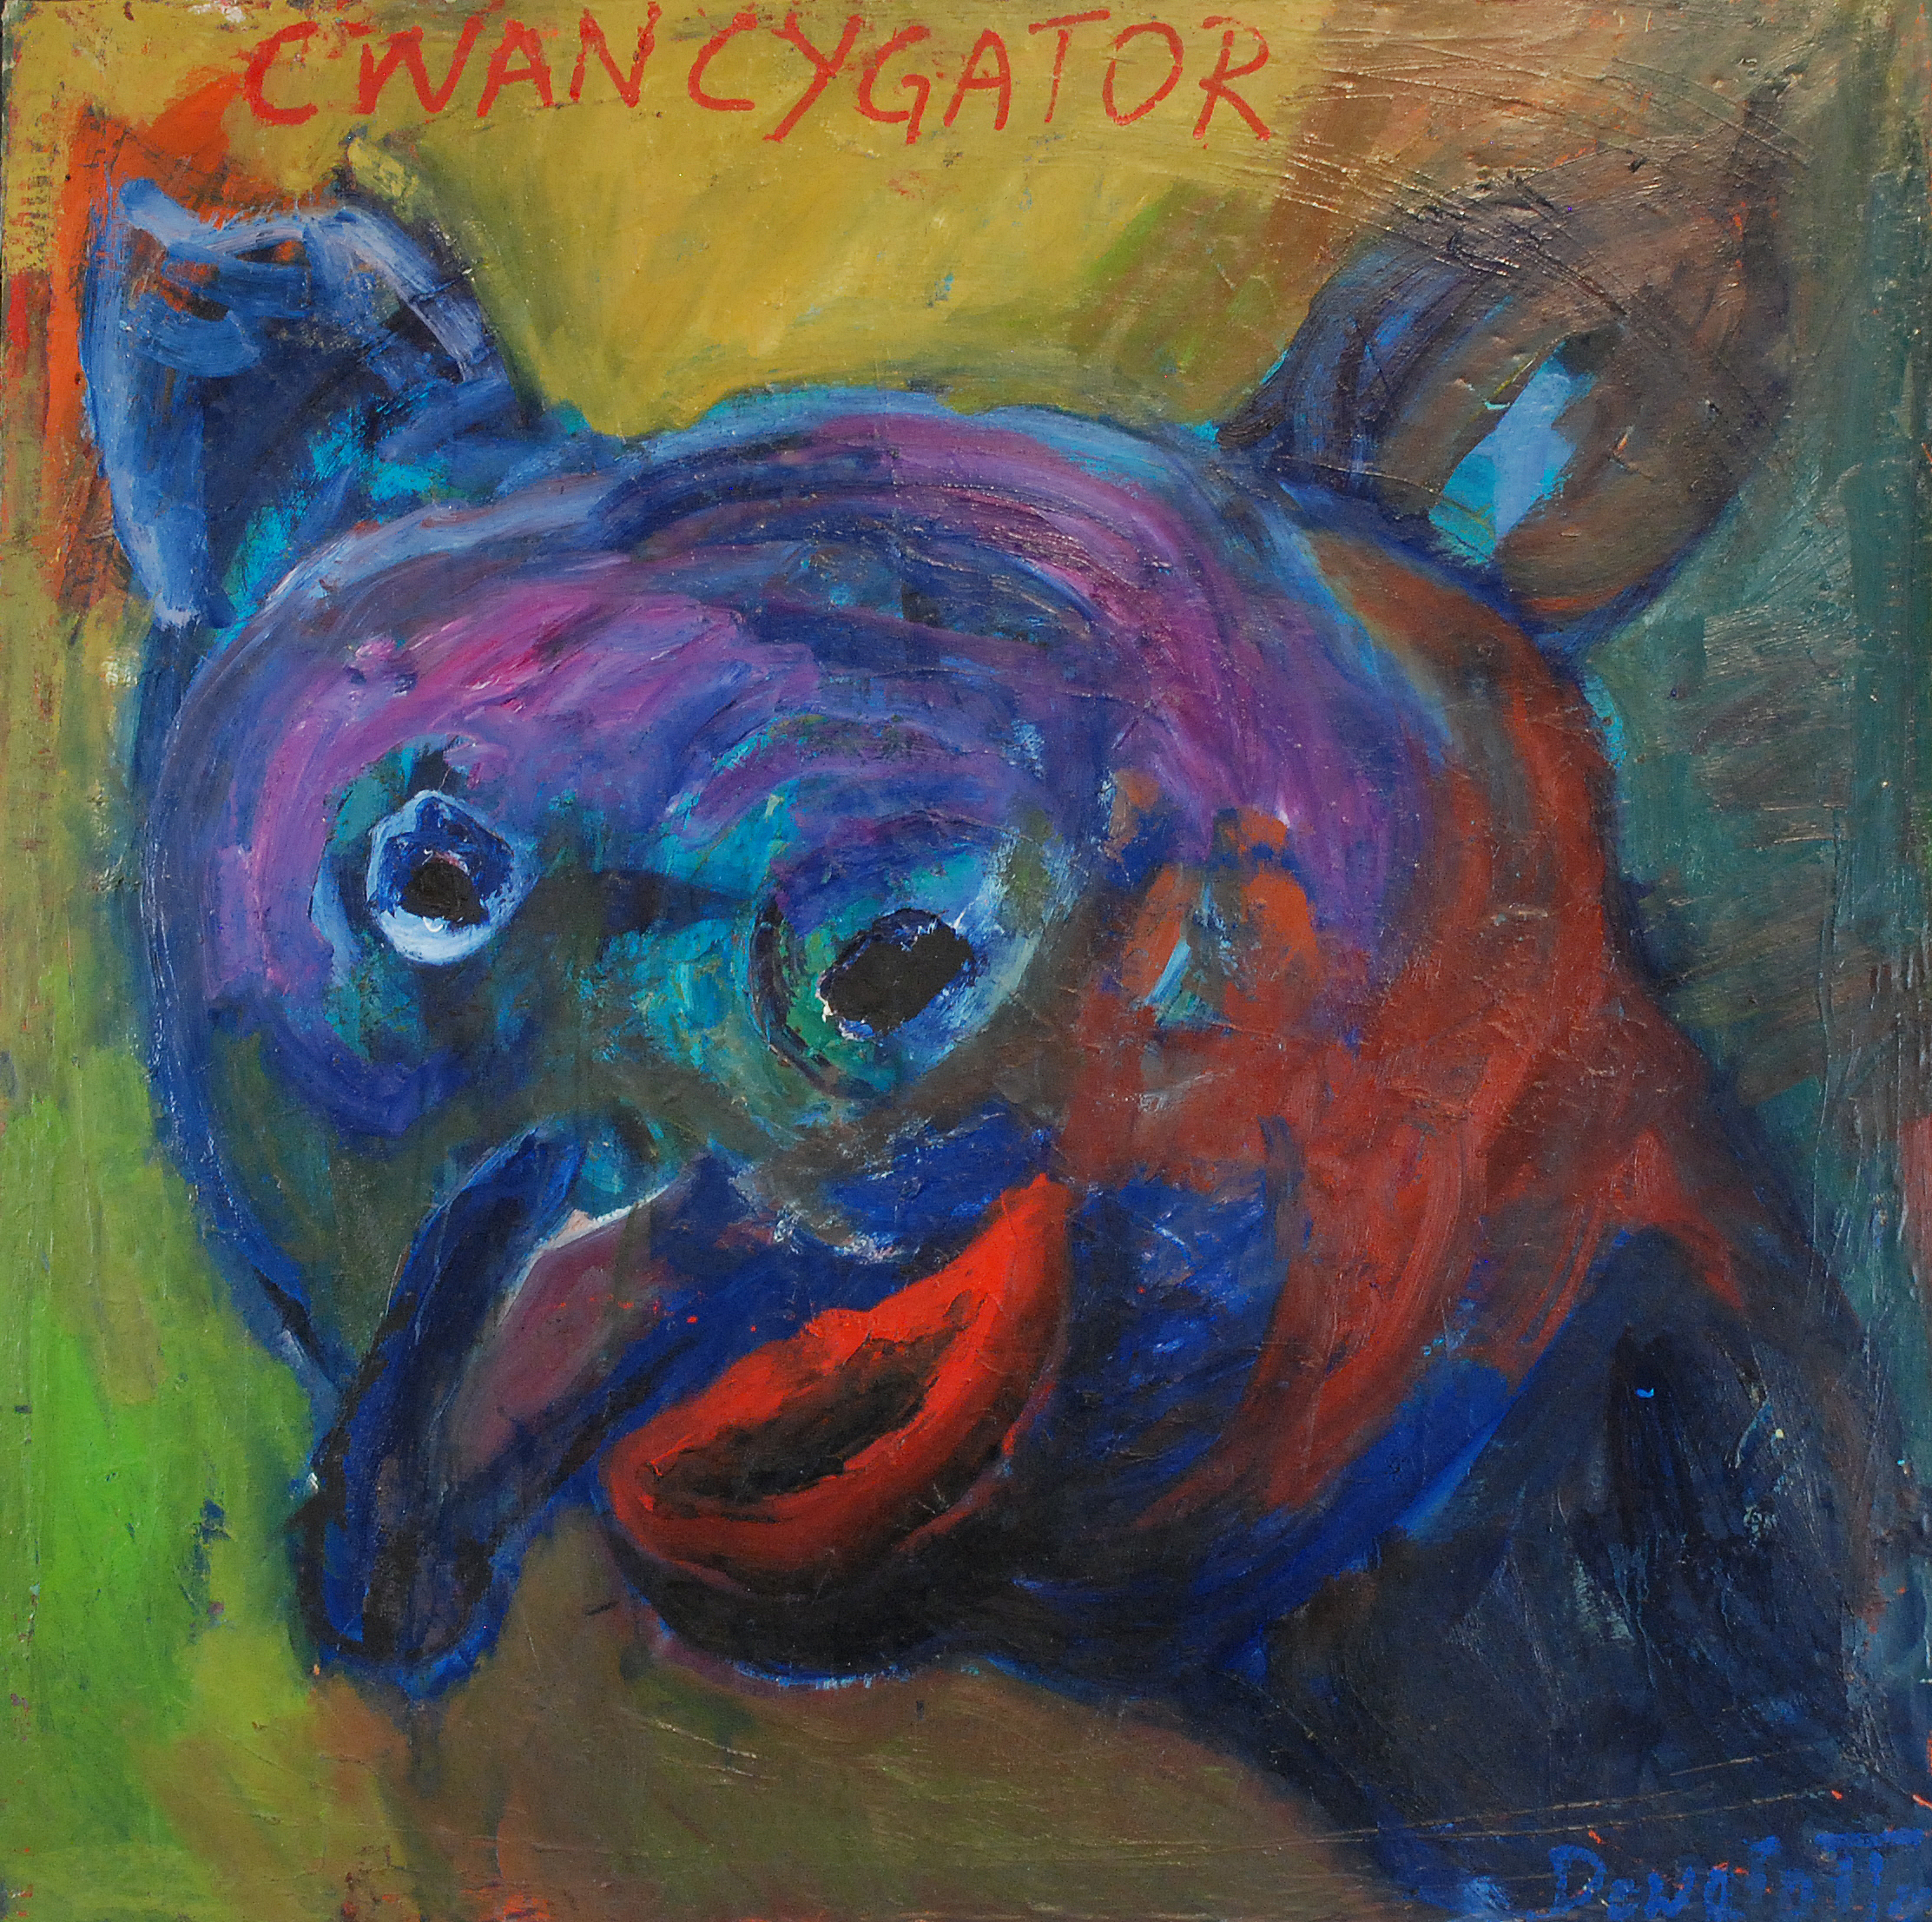 Cwancygator, 1981